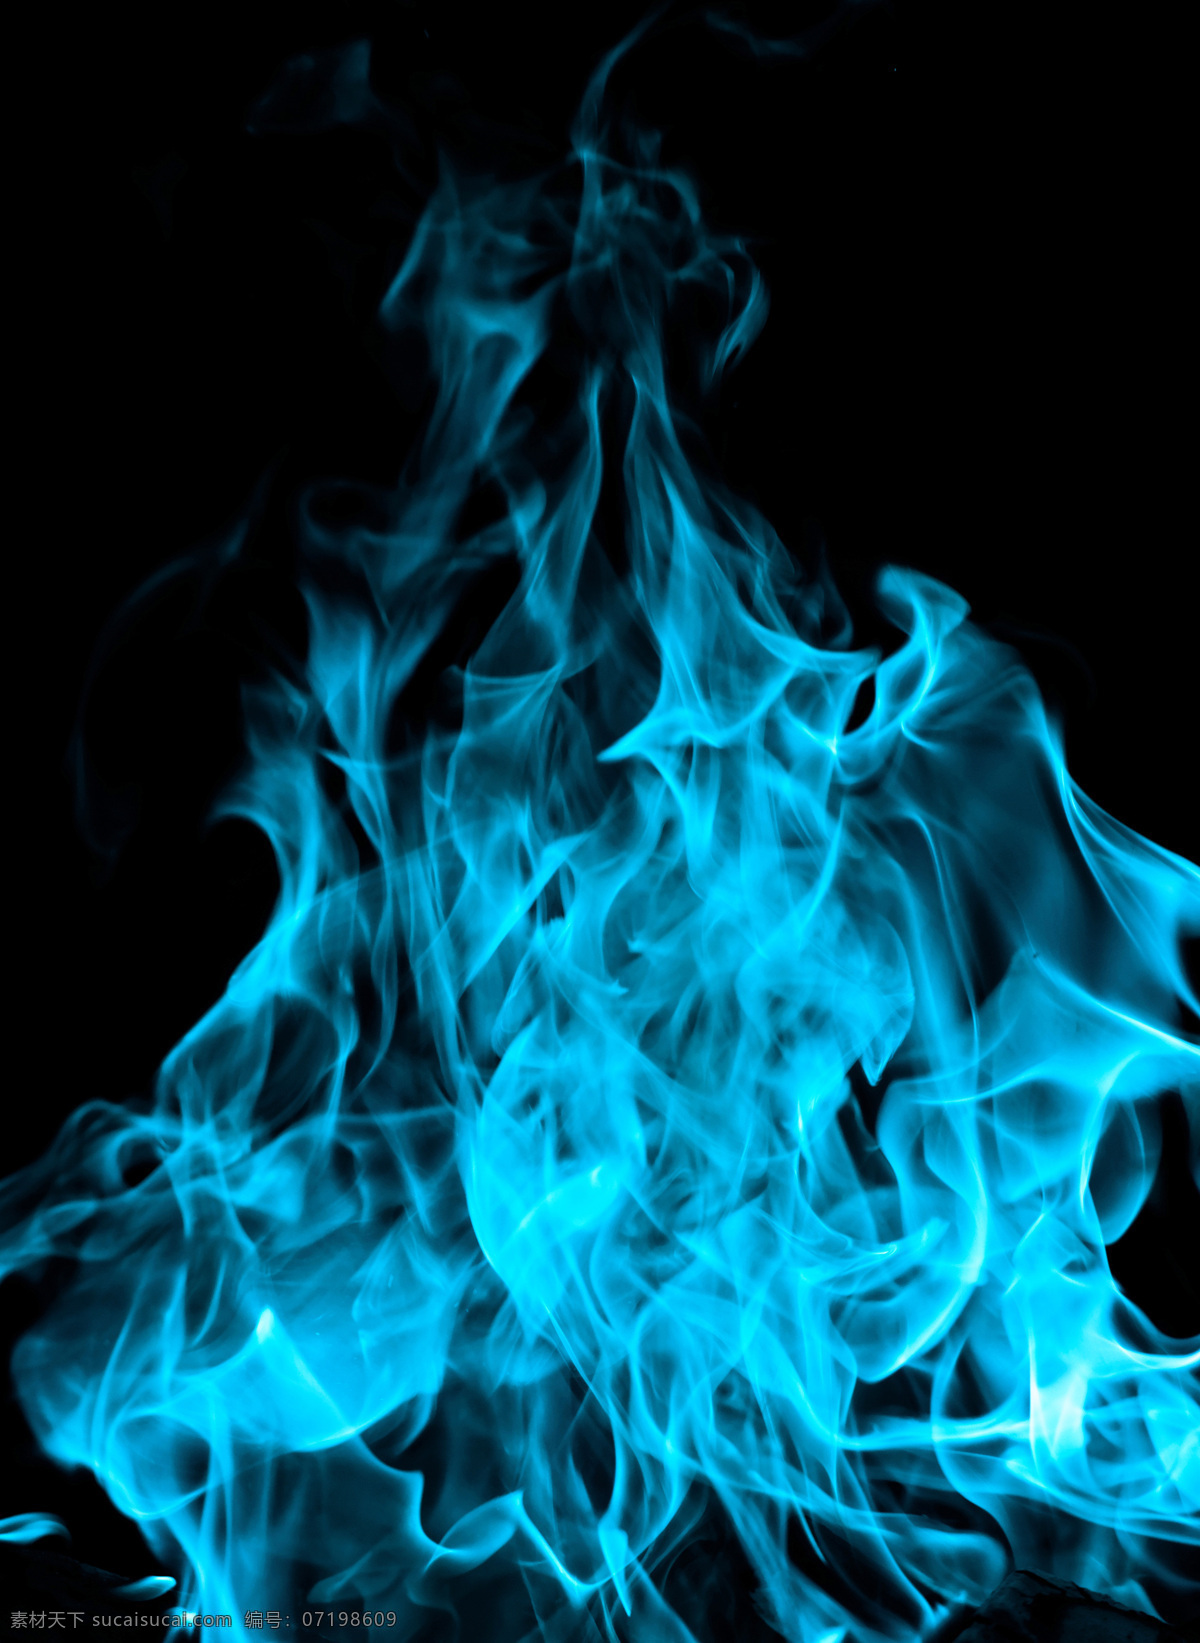 蓝色火焰 燃烧的火焰 火焰 燃烧 火焰背景 动感火焰 漂亮的火焰 跳动的火焰 火光 跳动 烈焰效果 跳跃 烈火 大火 火苗 背景底纹 动漫动画